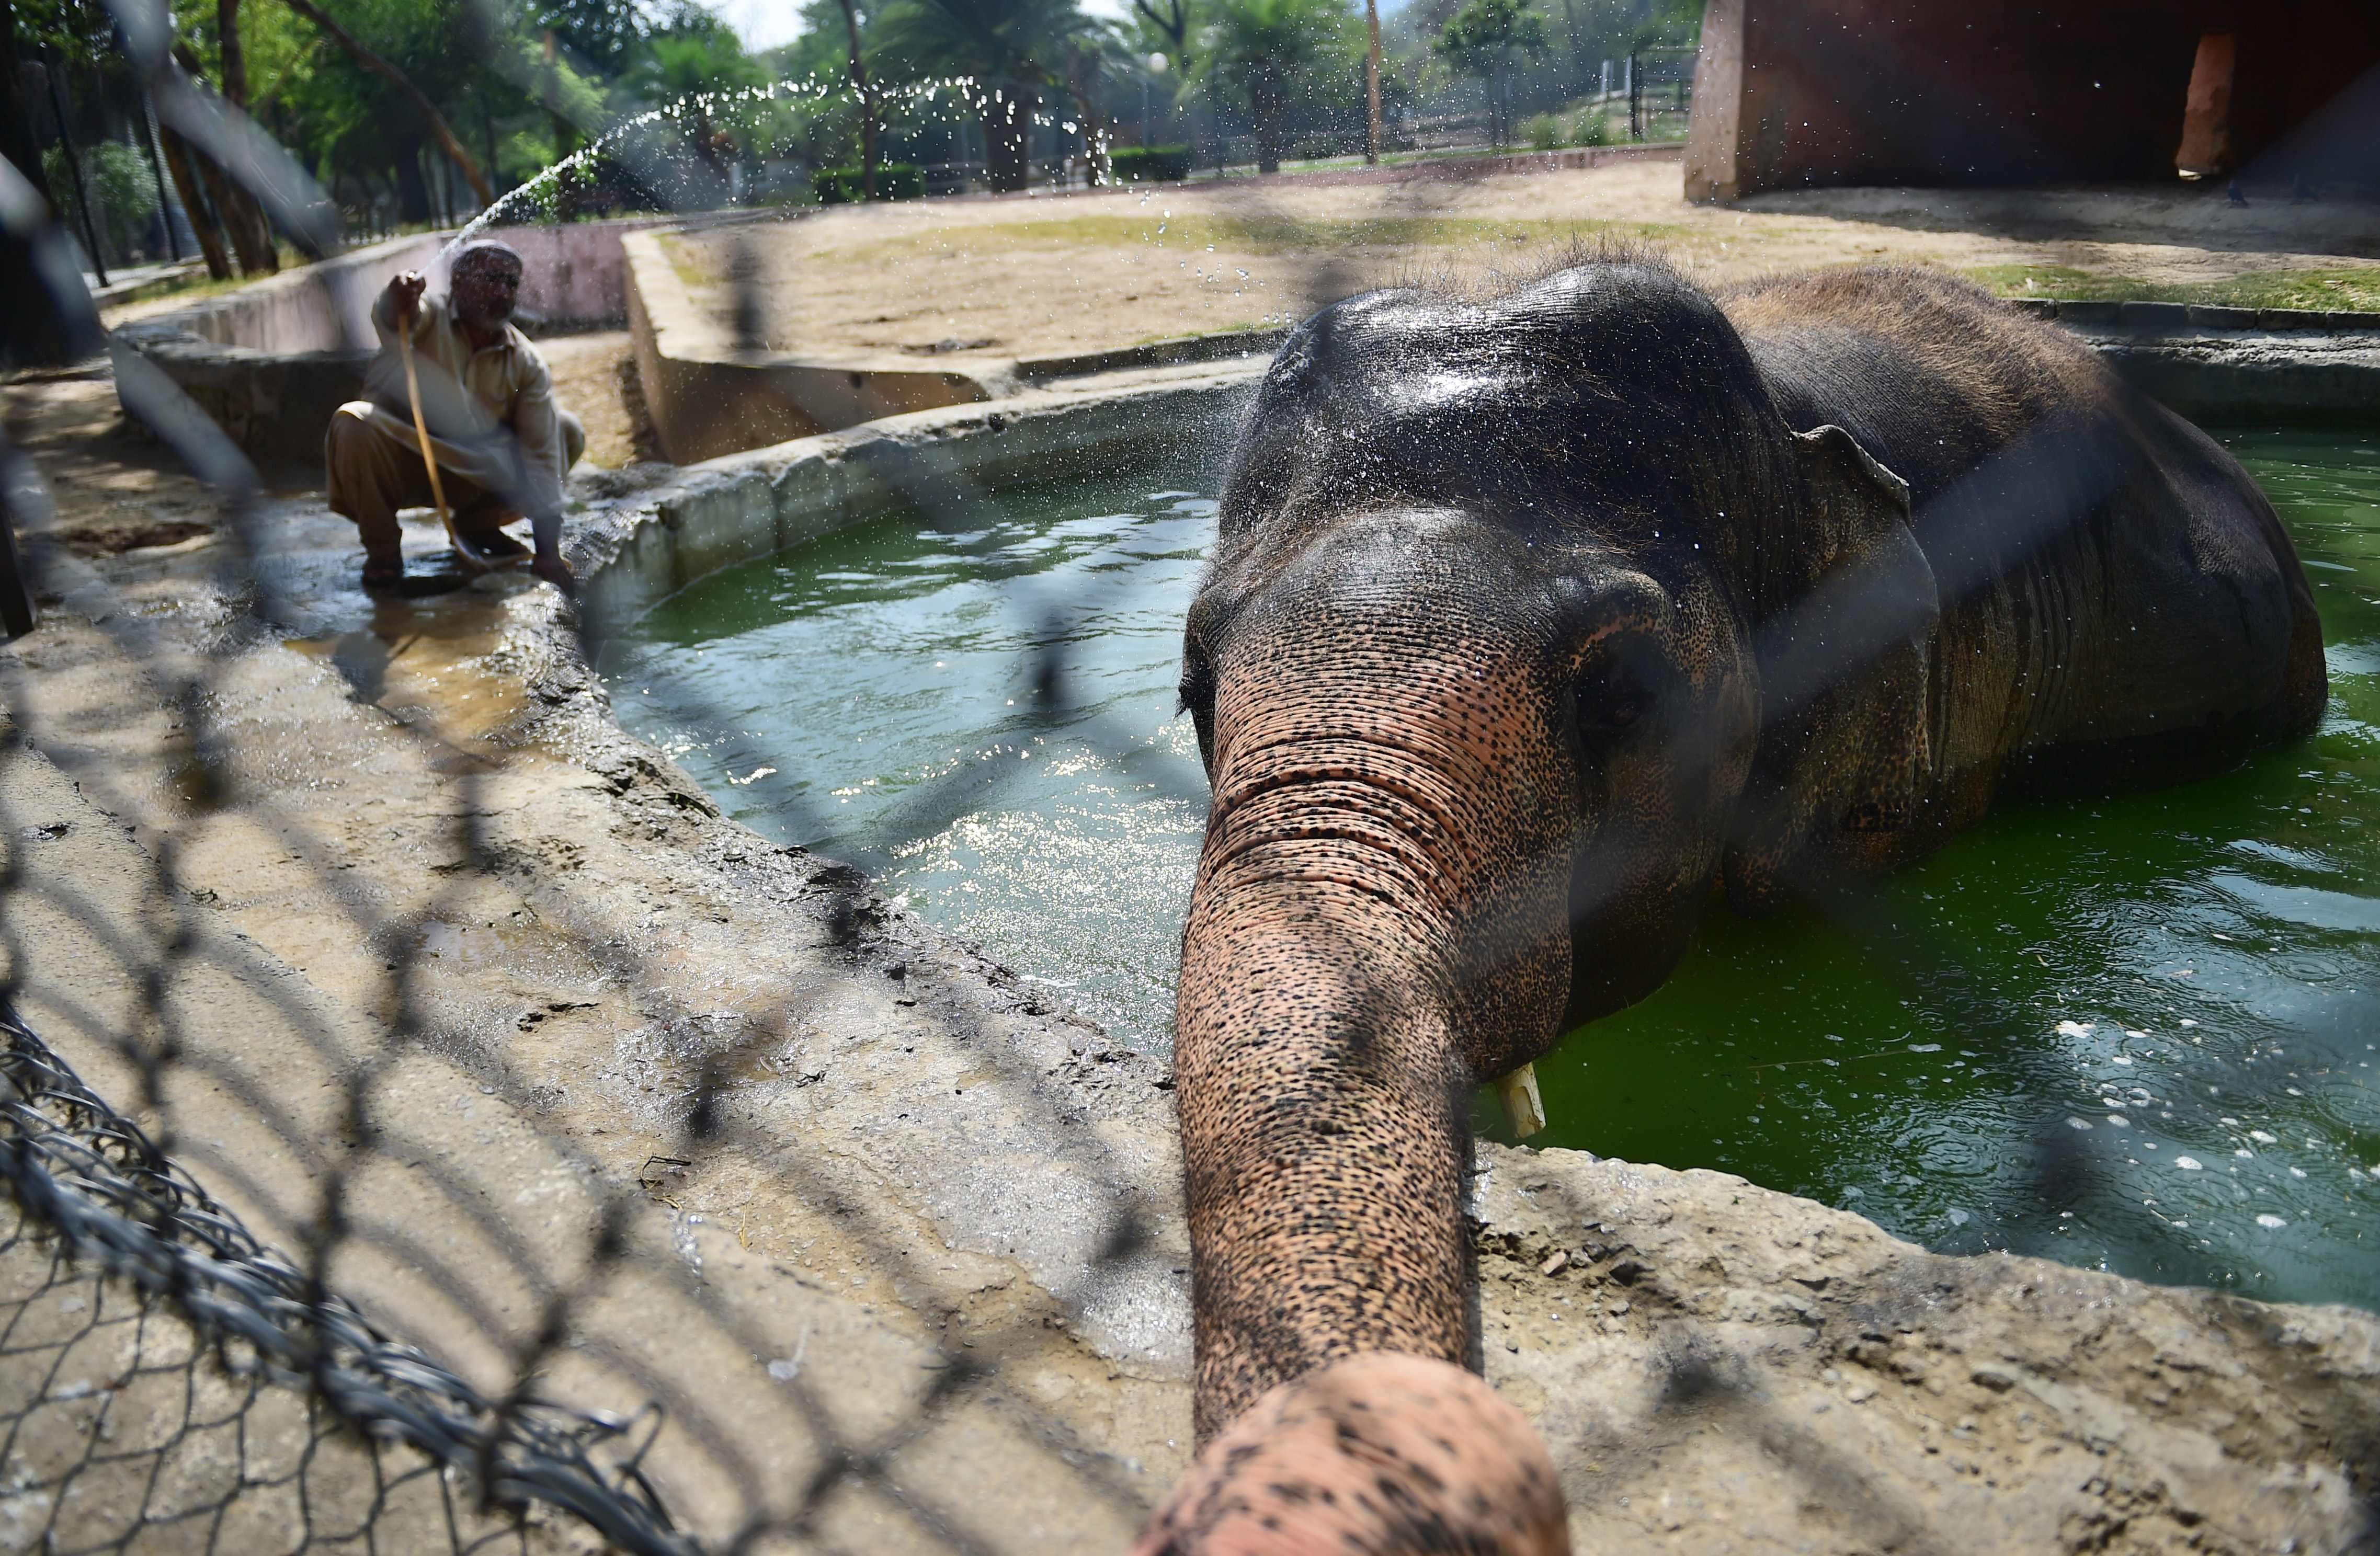 فيل ينزل فى مستنقع مياه بسبب الحر الشديد